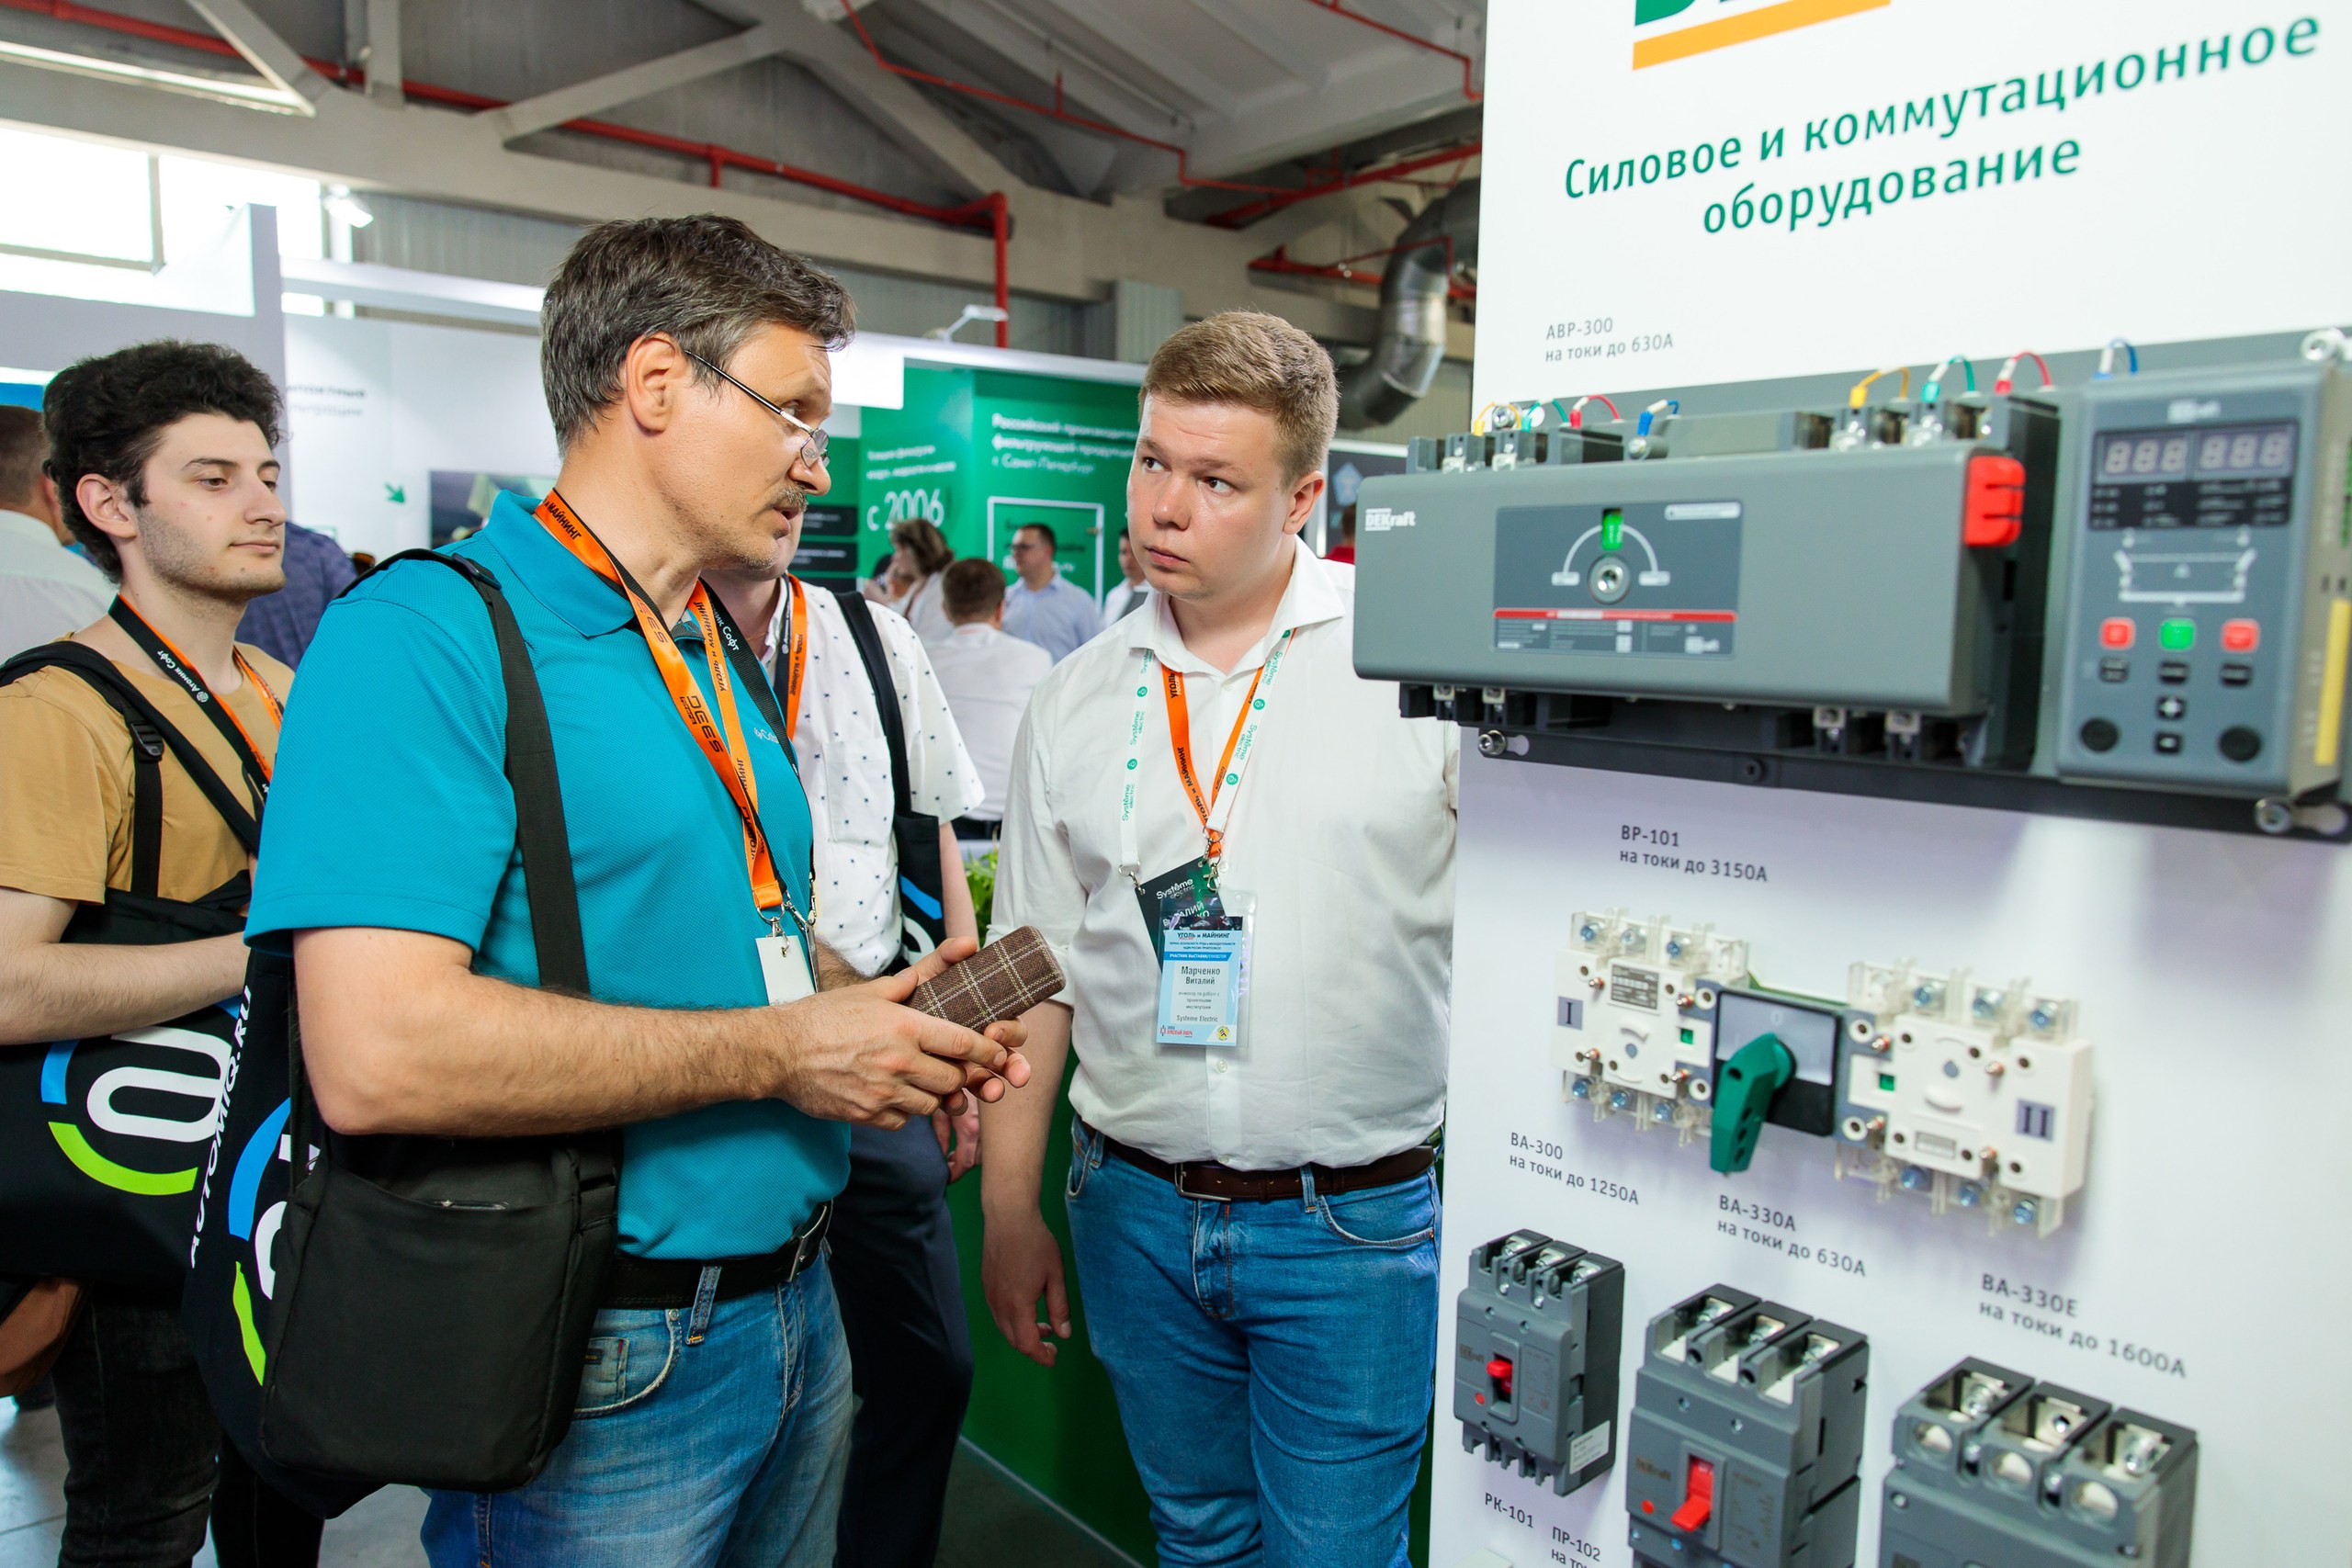 Systeme Electric приняла участие в выставке «Уголь России и Майнинг» в Новокузнецке